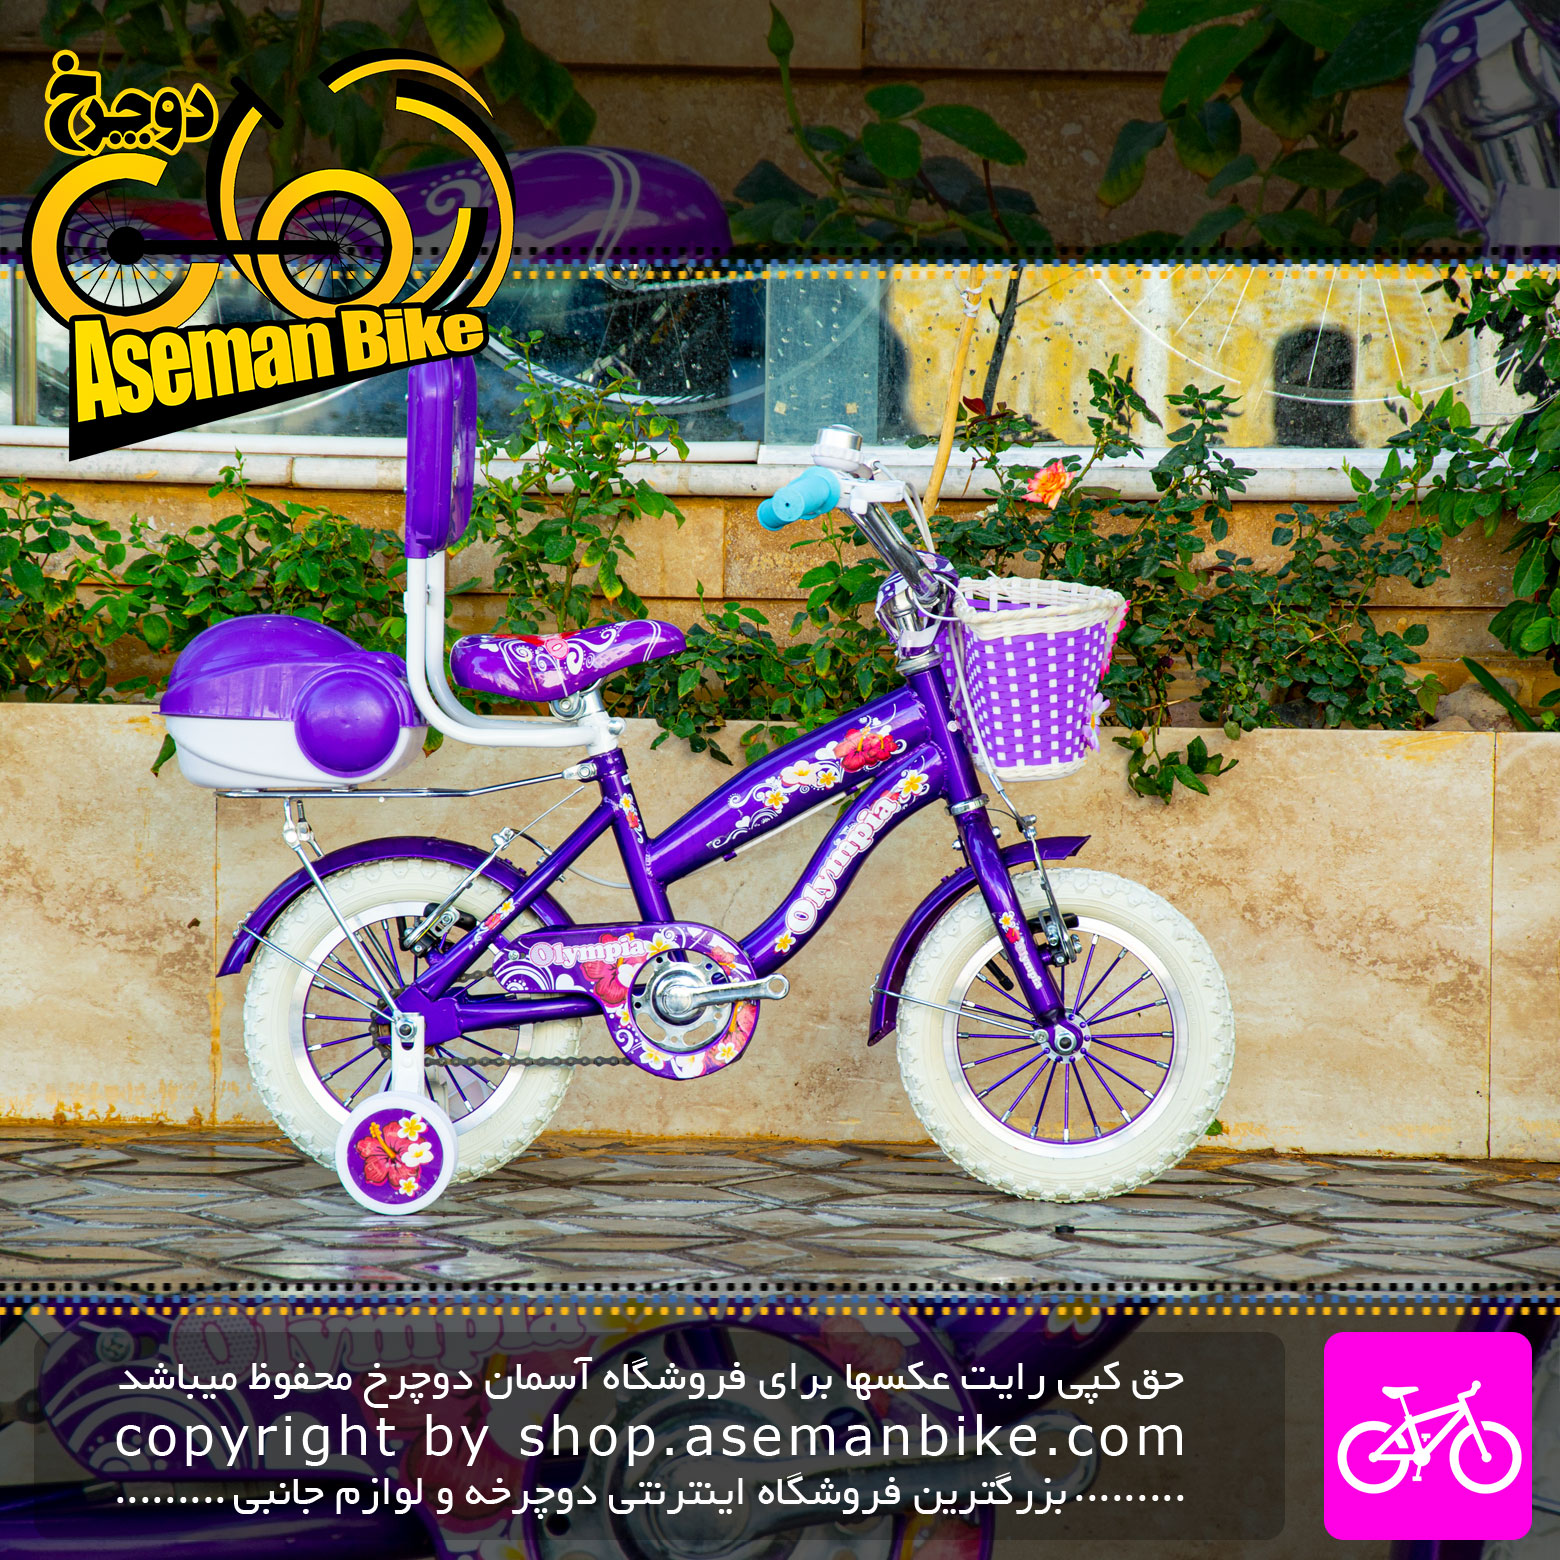 دوچرخه بچه گانه دخترانه المپیا سایز 12 رنگ بنفش Olympia Kids Girl Bicycle Size 12 Purple